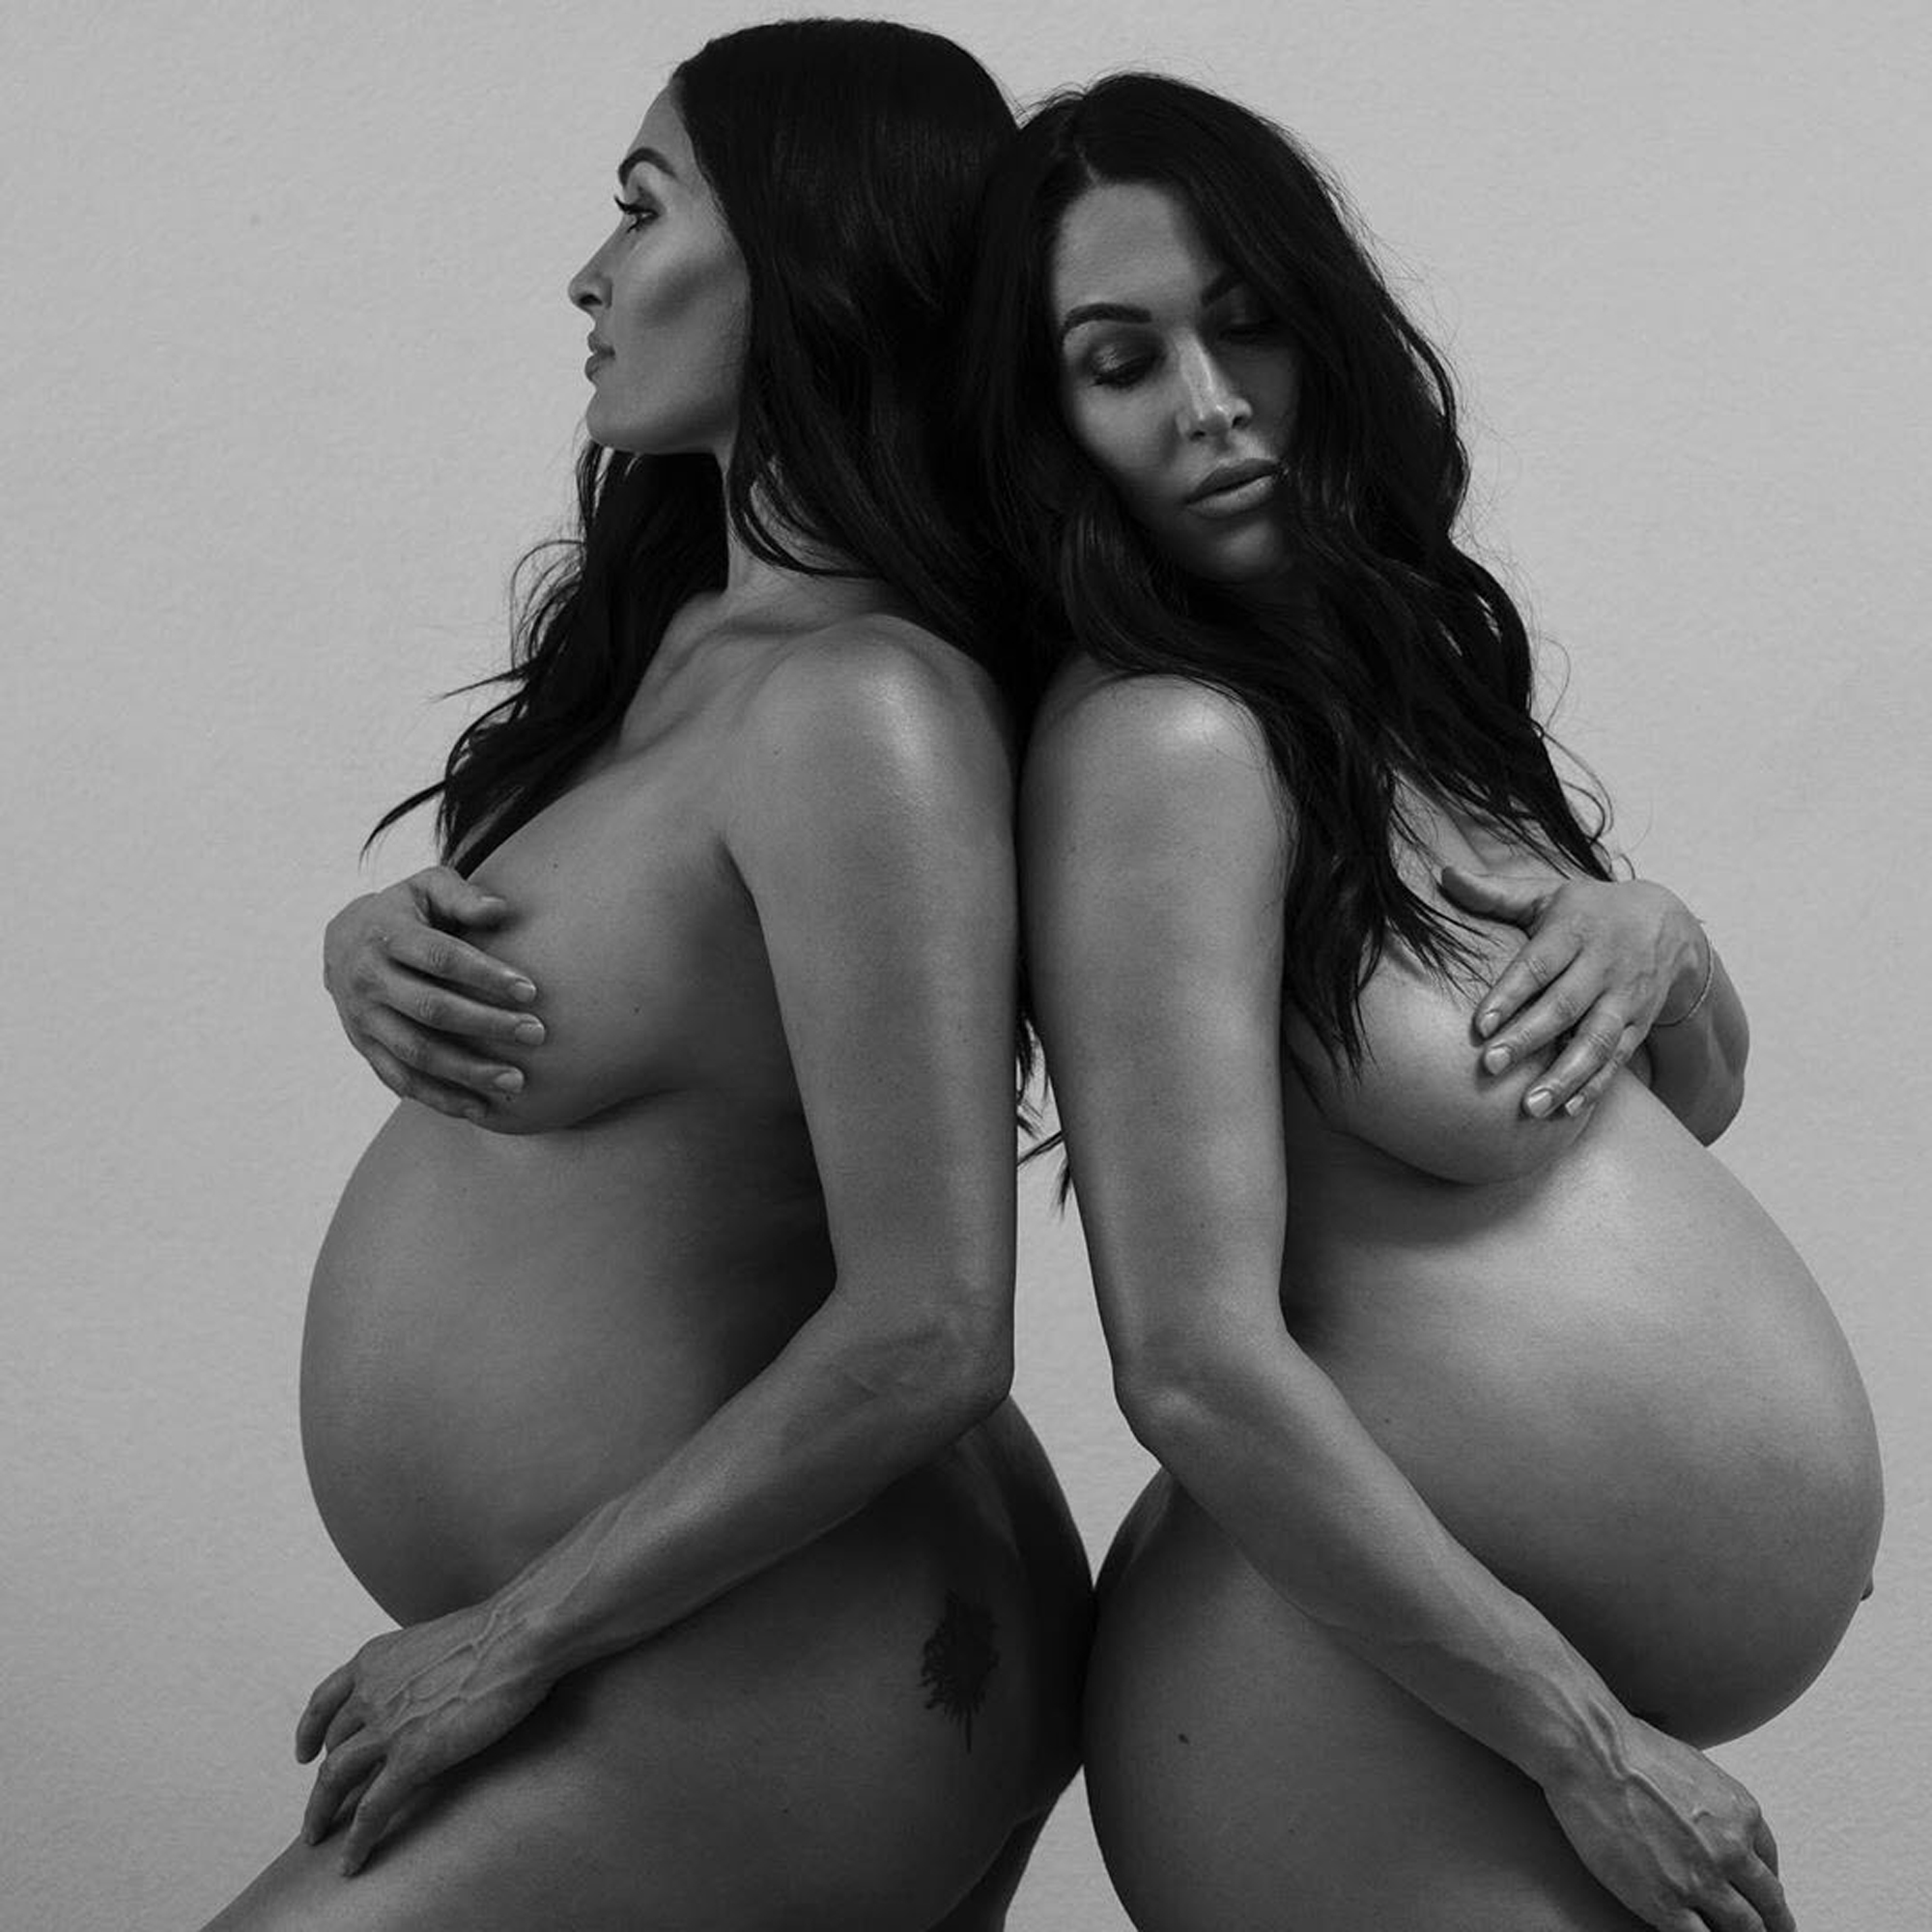 Pregnant Bella Thorne Porn - Pregnant Nikki, Brie Bella Pose Nude Ahead of Birth: Baby Bump Pics